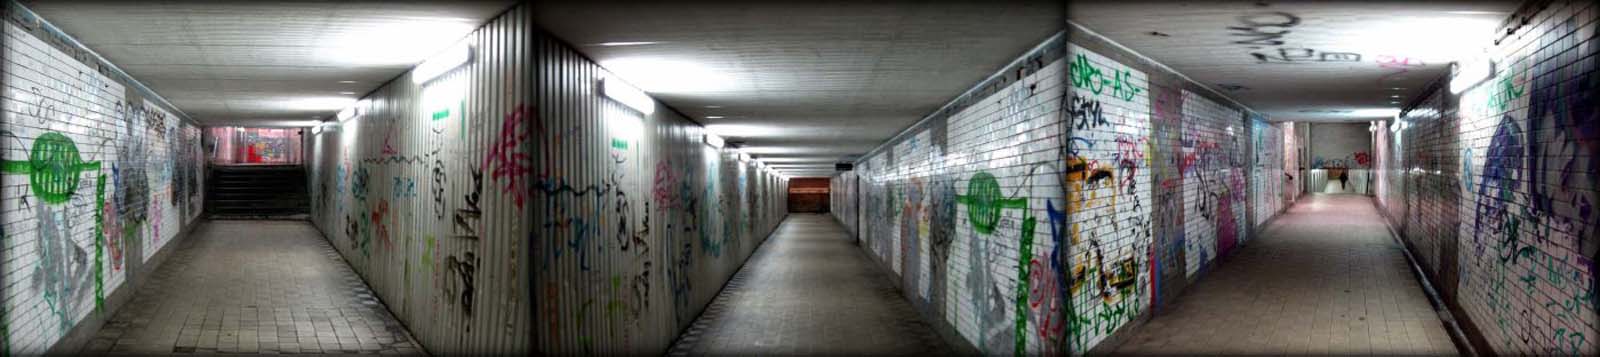 Tunel łączący hol i wejście na perony górne oraz perony nadwarciańskie. Widoczna długa część zalicza się do połączenia technicznego, gospodarczego, awaryjnego. Właściwe dostępne dla podróżnych przejścia znajdują się na początku i końcu tego korytarza. Gdy za czasów niemieckich istniało połączenie peronów nadwarciańskich i kostrzyńskich kładką nadziemną, ten korytarz nie służył bezpośrednio podróżnym. Dopiero po 1945 w P.R.L. u przejścia przybrały aktualną postać. 10.09.2010.